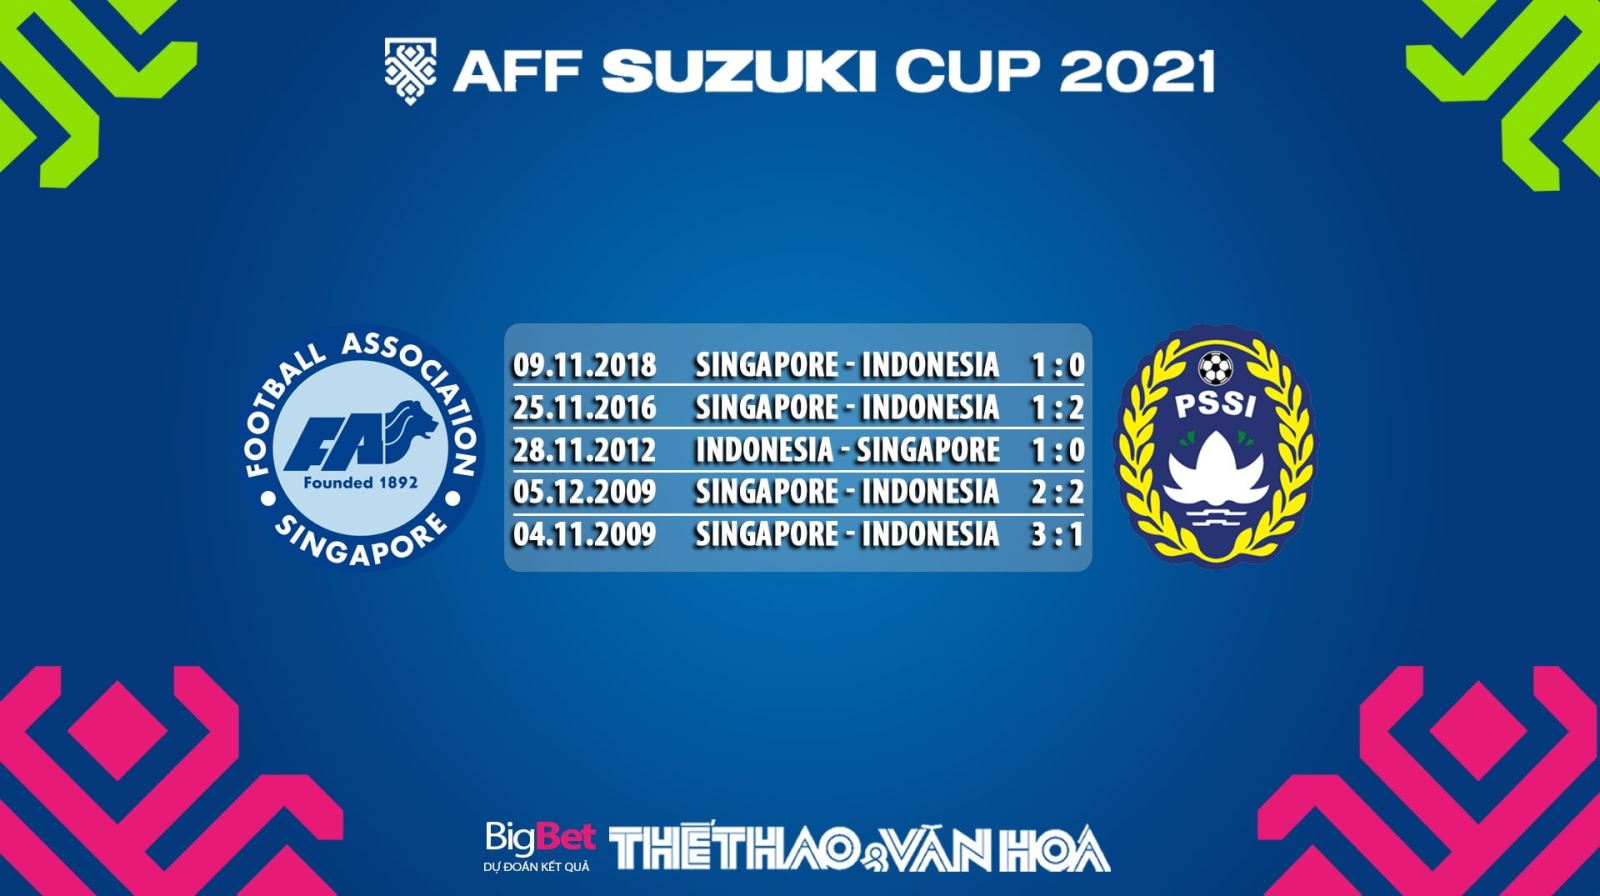 Singapore vs Indonesia, nhận định kết quả, nhận định bóng đá Singapore vs Indonesia, nhận định bóng đá, Singapore, Indonesia, keo nha cai, dự đoán bóng đá, AFF Cup 2021